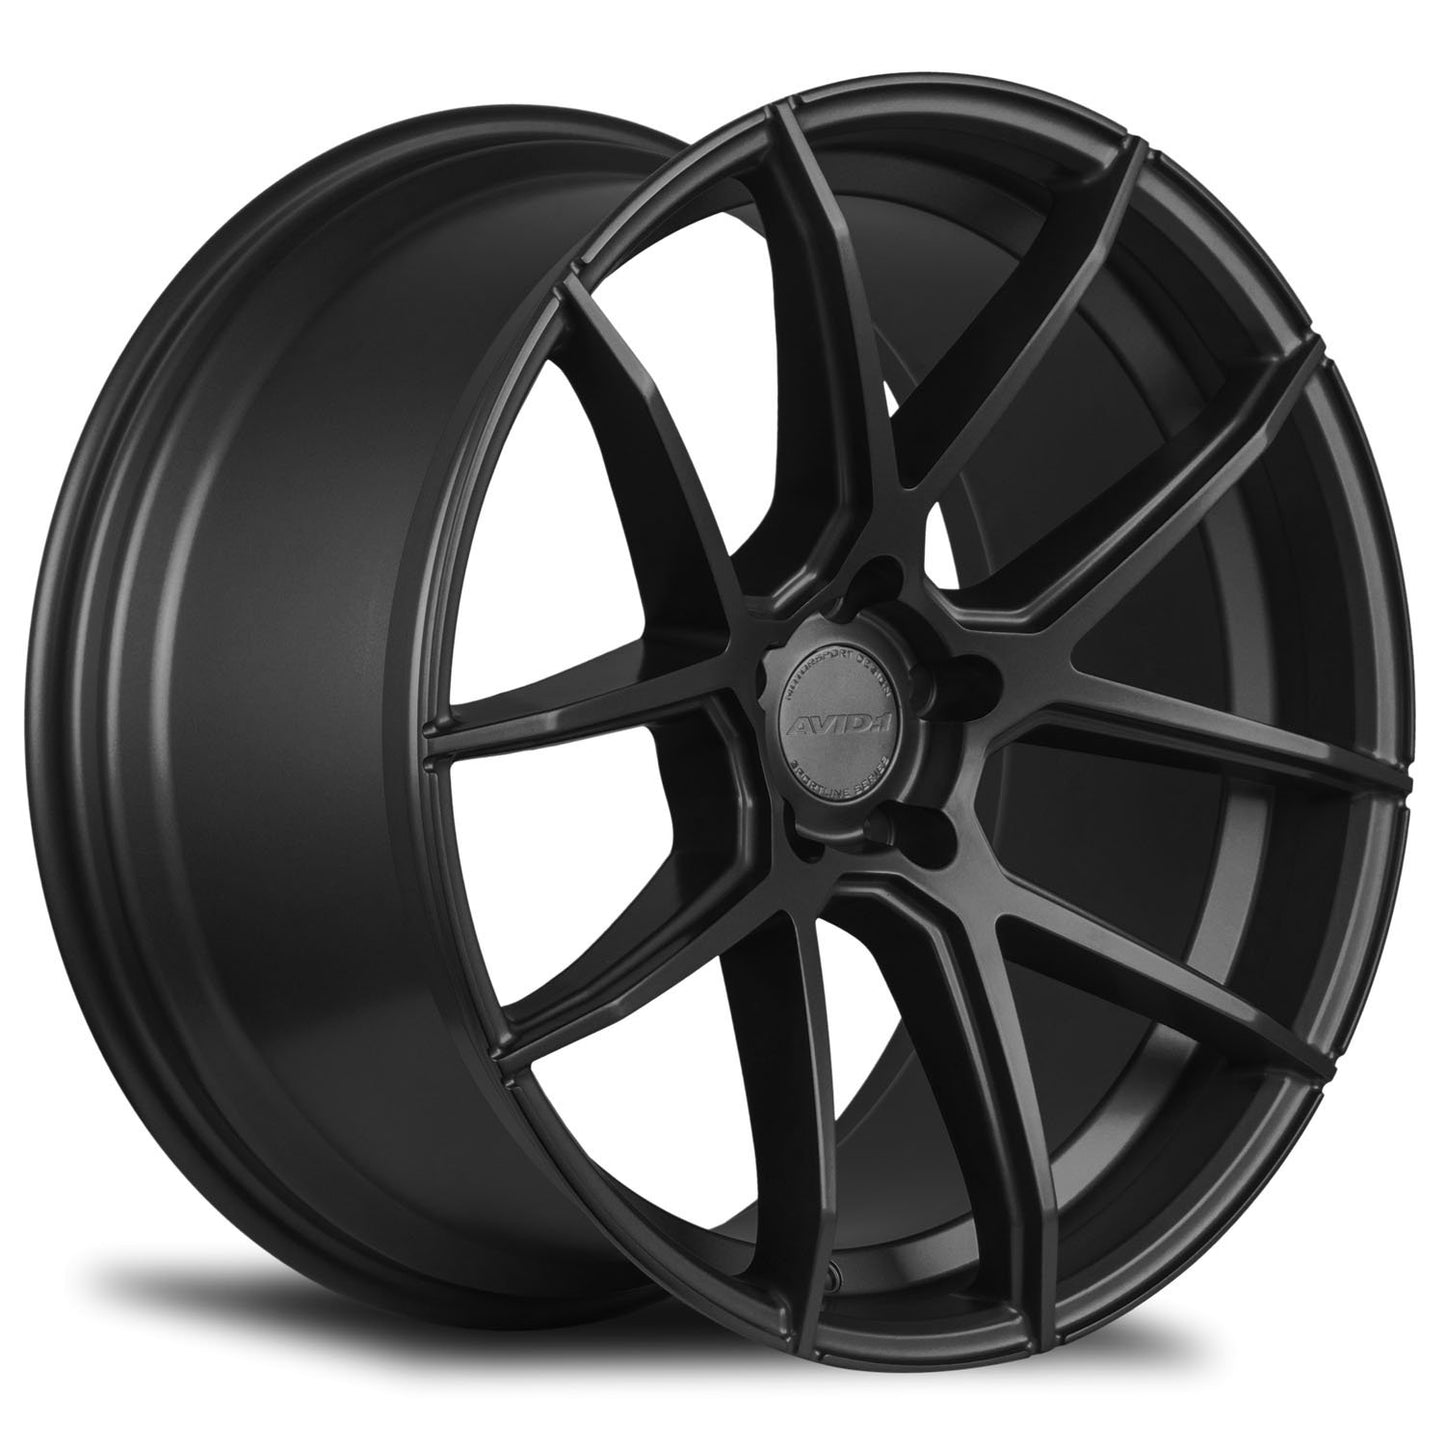 AVID1 Wheels SL02 Matte Black-SL0218855H35BK-Wheels-Avid1-18x8.5-5x114.3-+35mm-JDMuscle